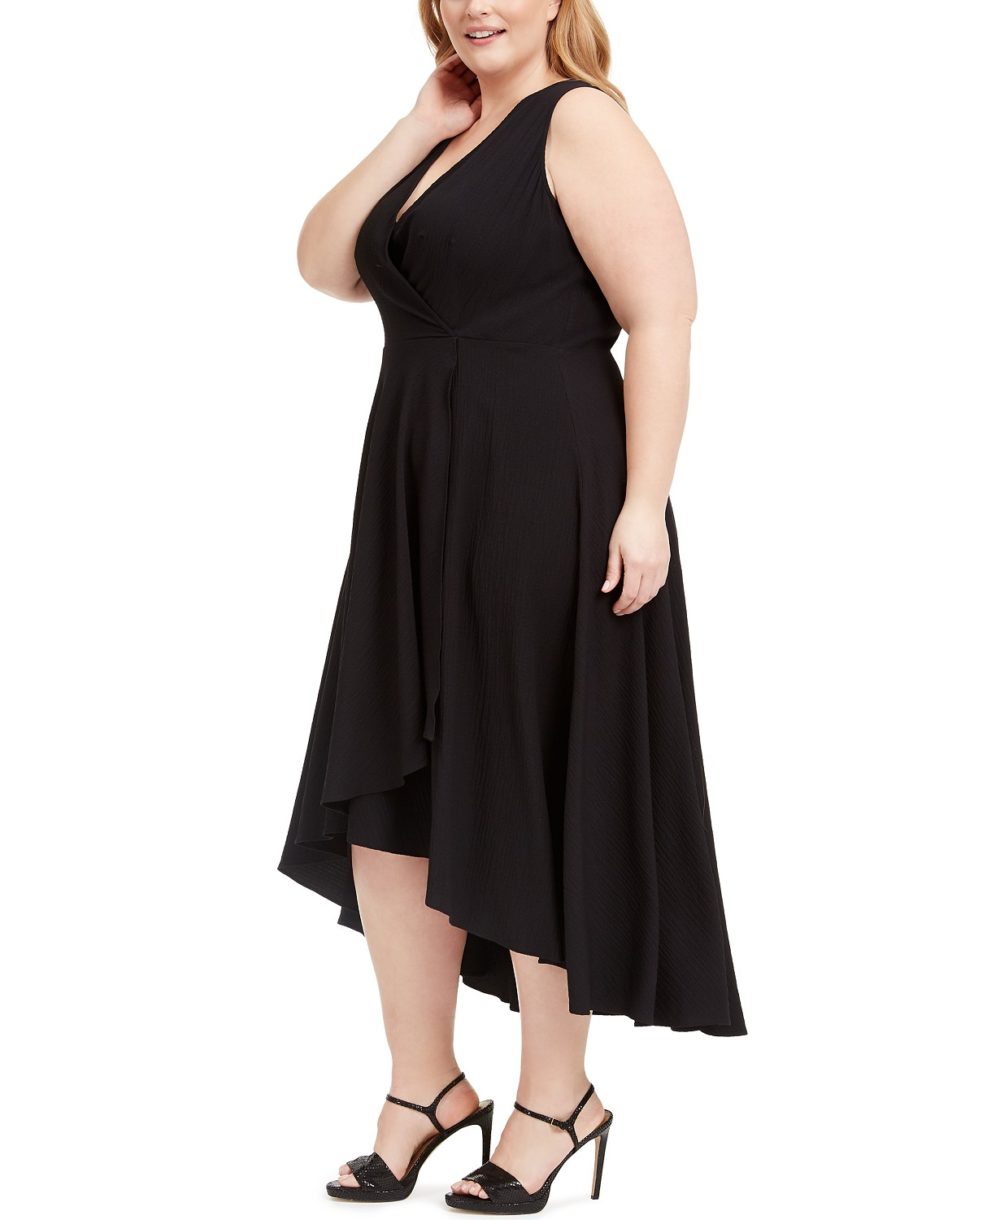 woocommerce-673321-2209615.cloudwaysapps.com-calvin-klein-womens-plus-size-black-textured-faux-wrap-high-low-dress